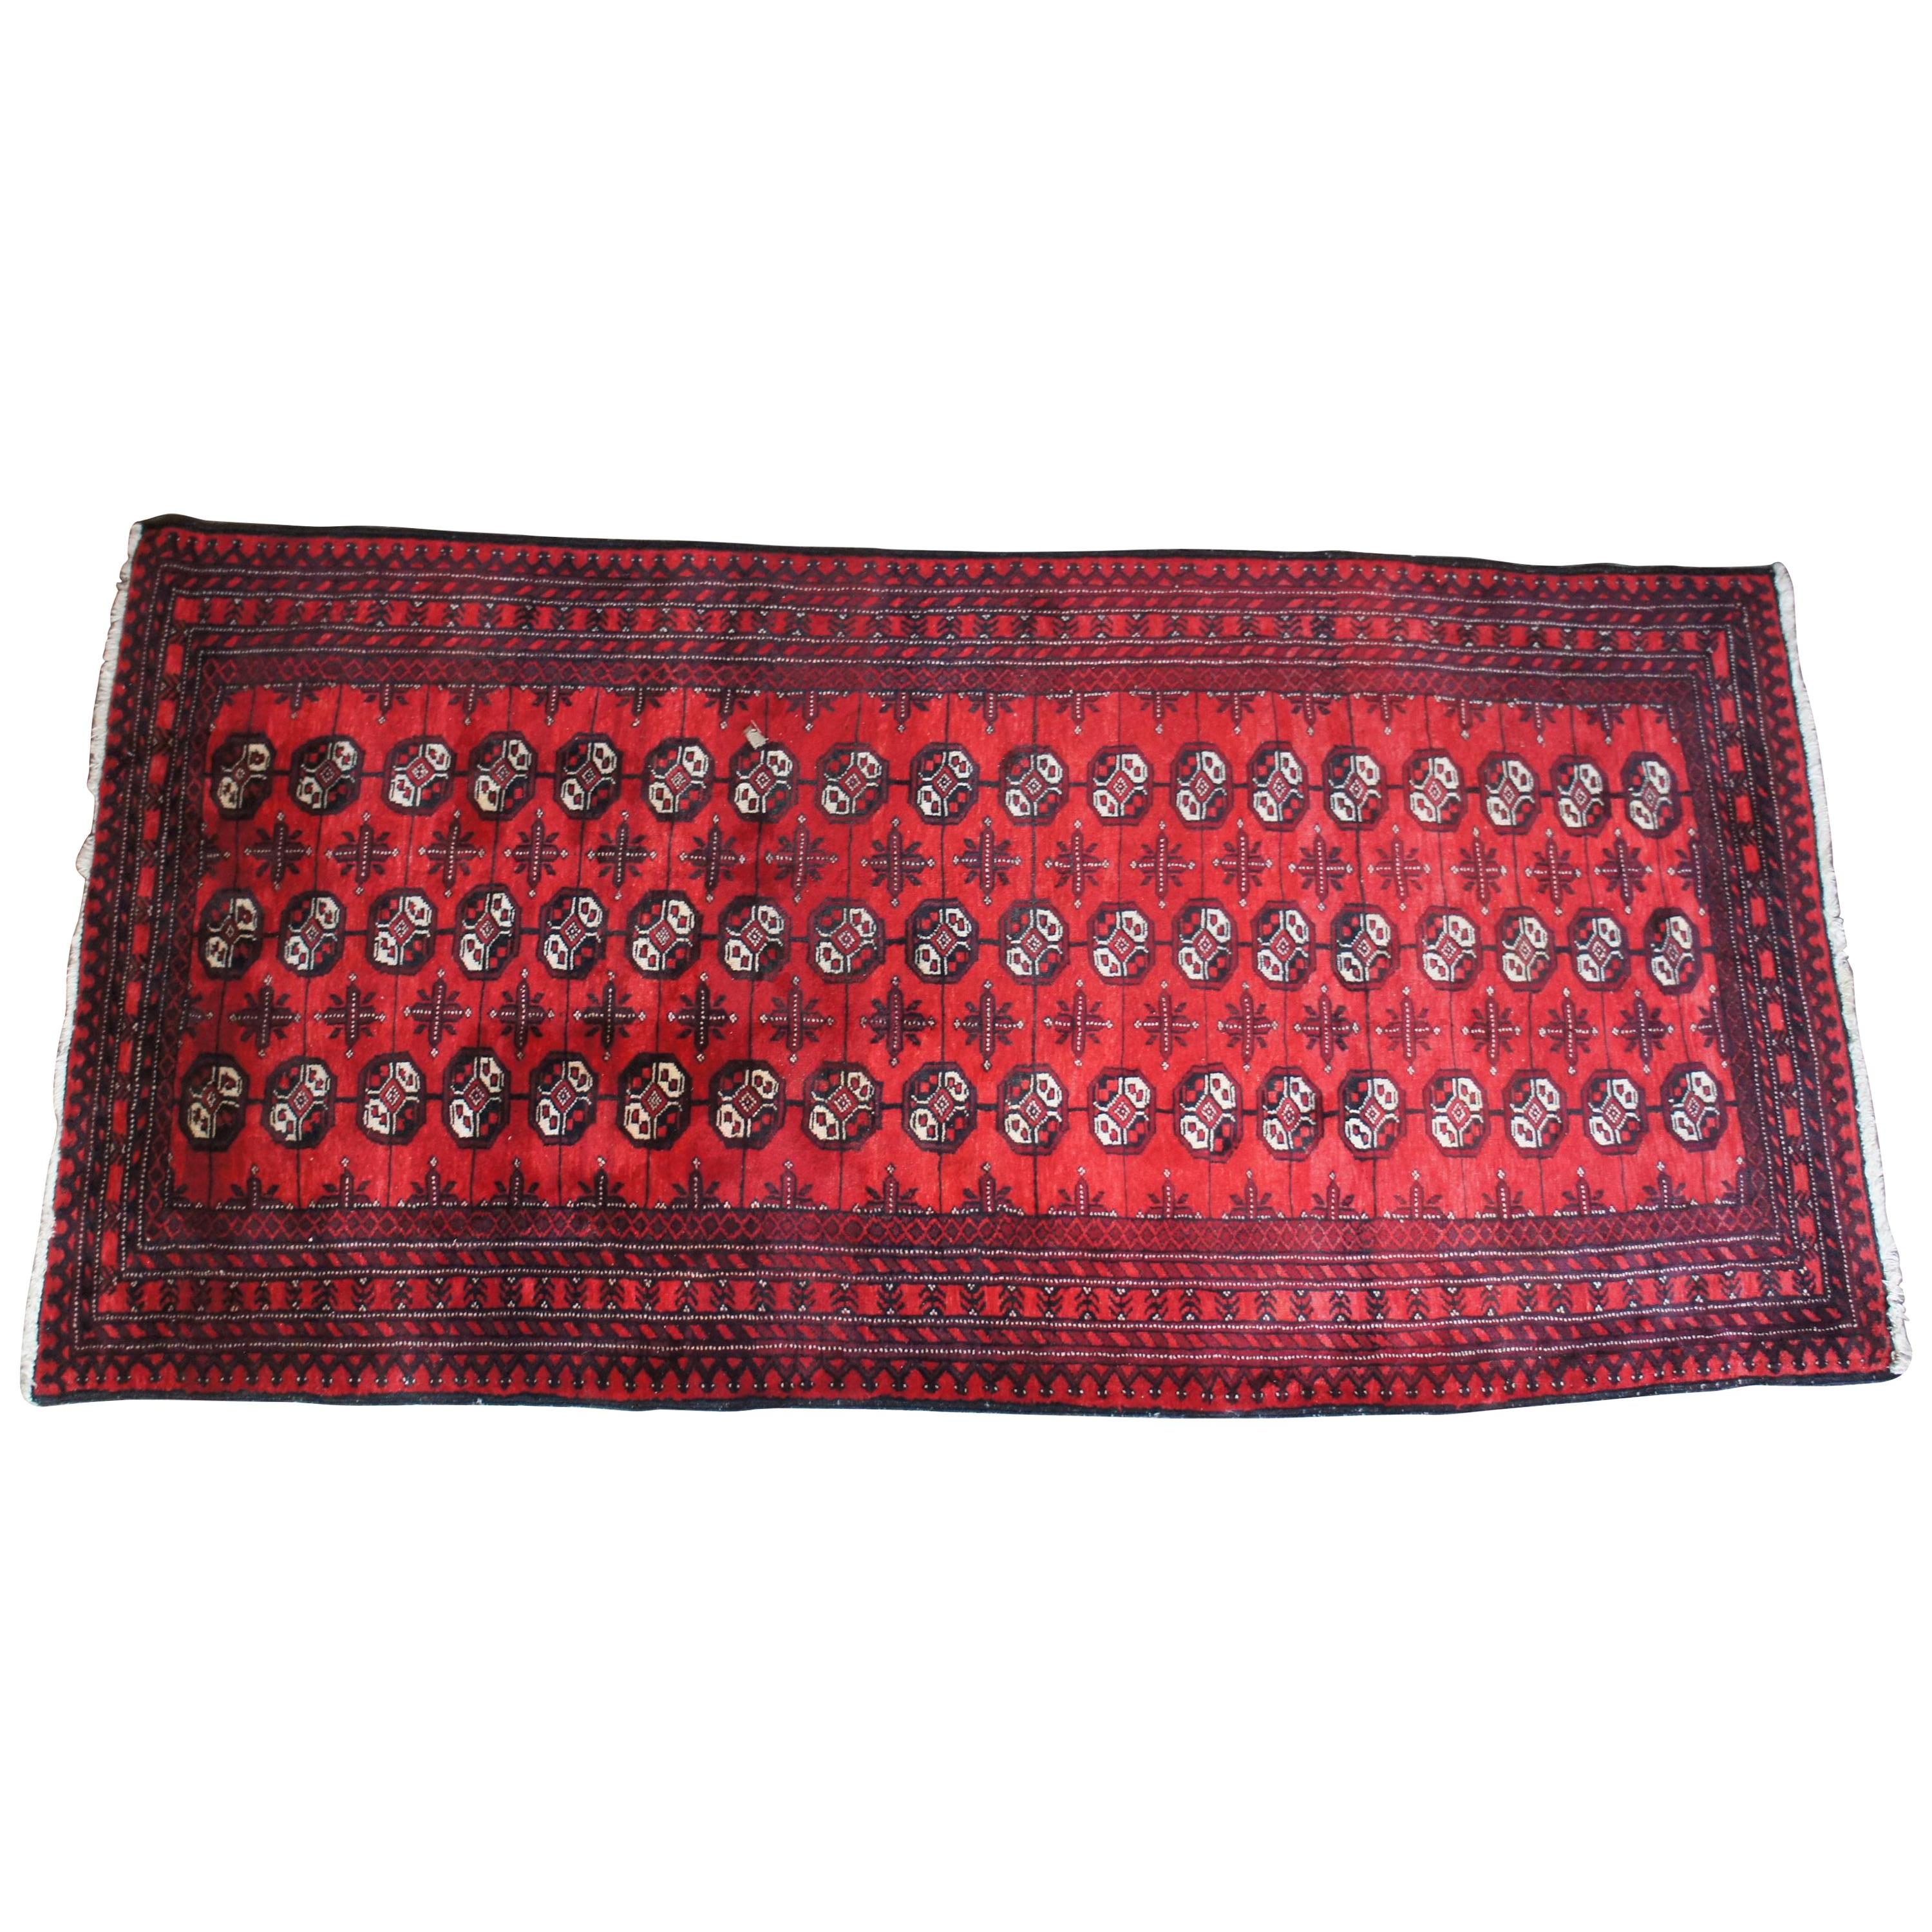 Tapis géométrique persan vintage noué à la main Royal Bokhara en laine et soie, tapis ou chemin de table. Il s'agit d'un champ de rouge avec des noirs et des tans.
 